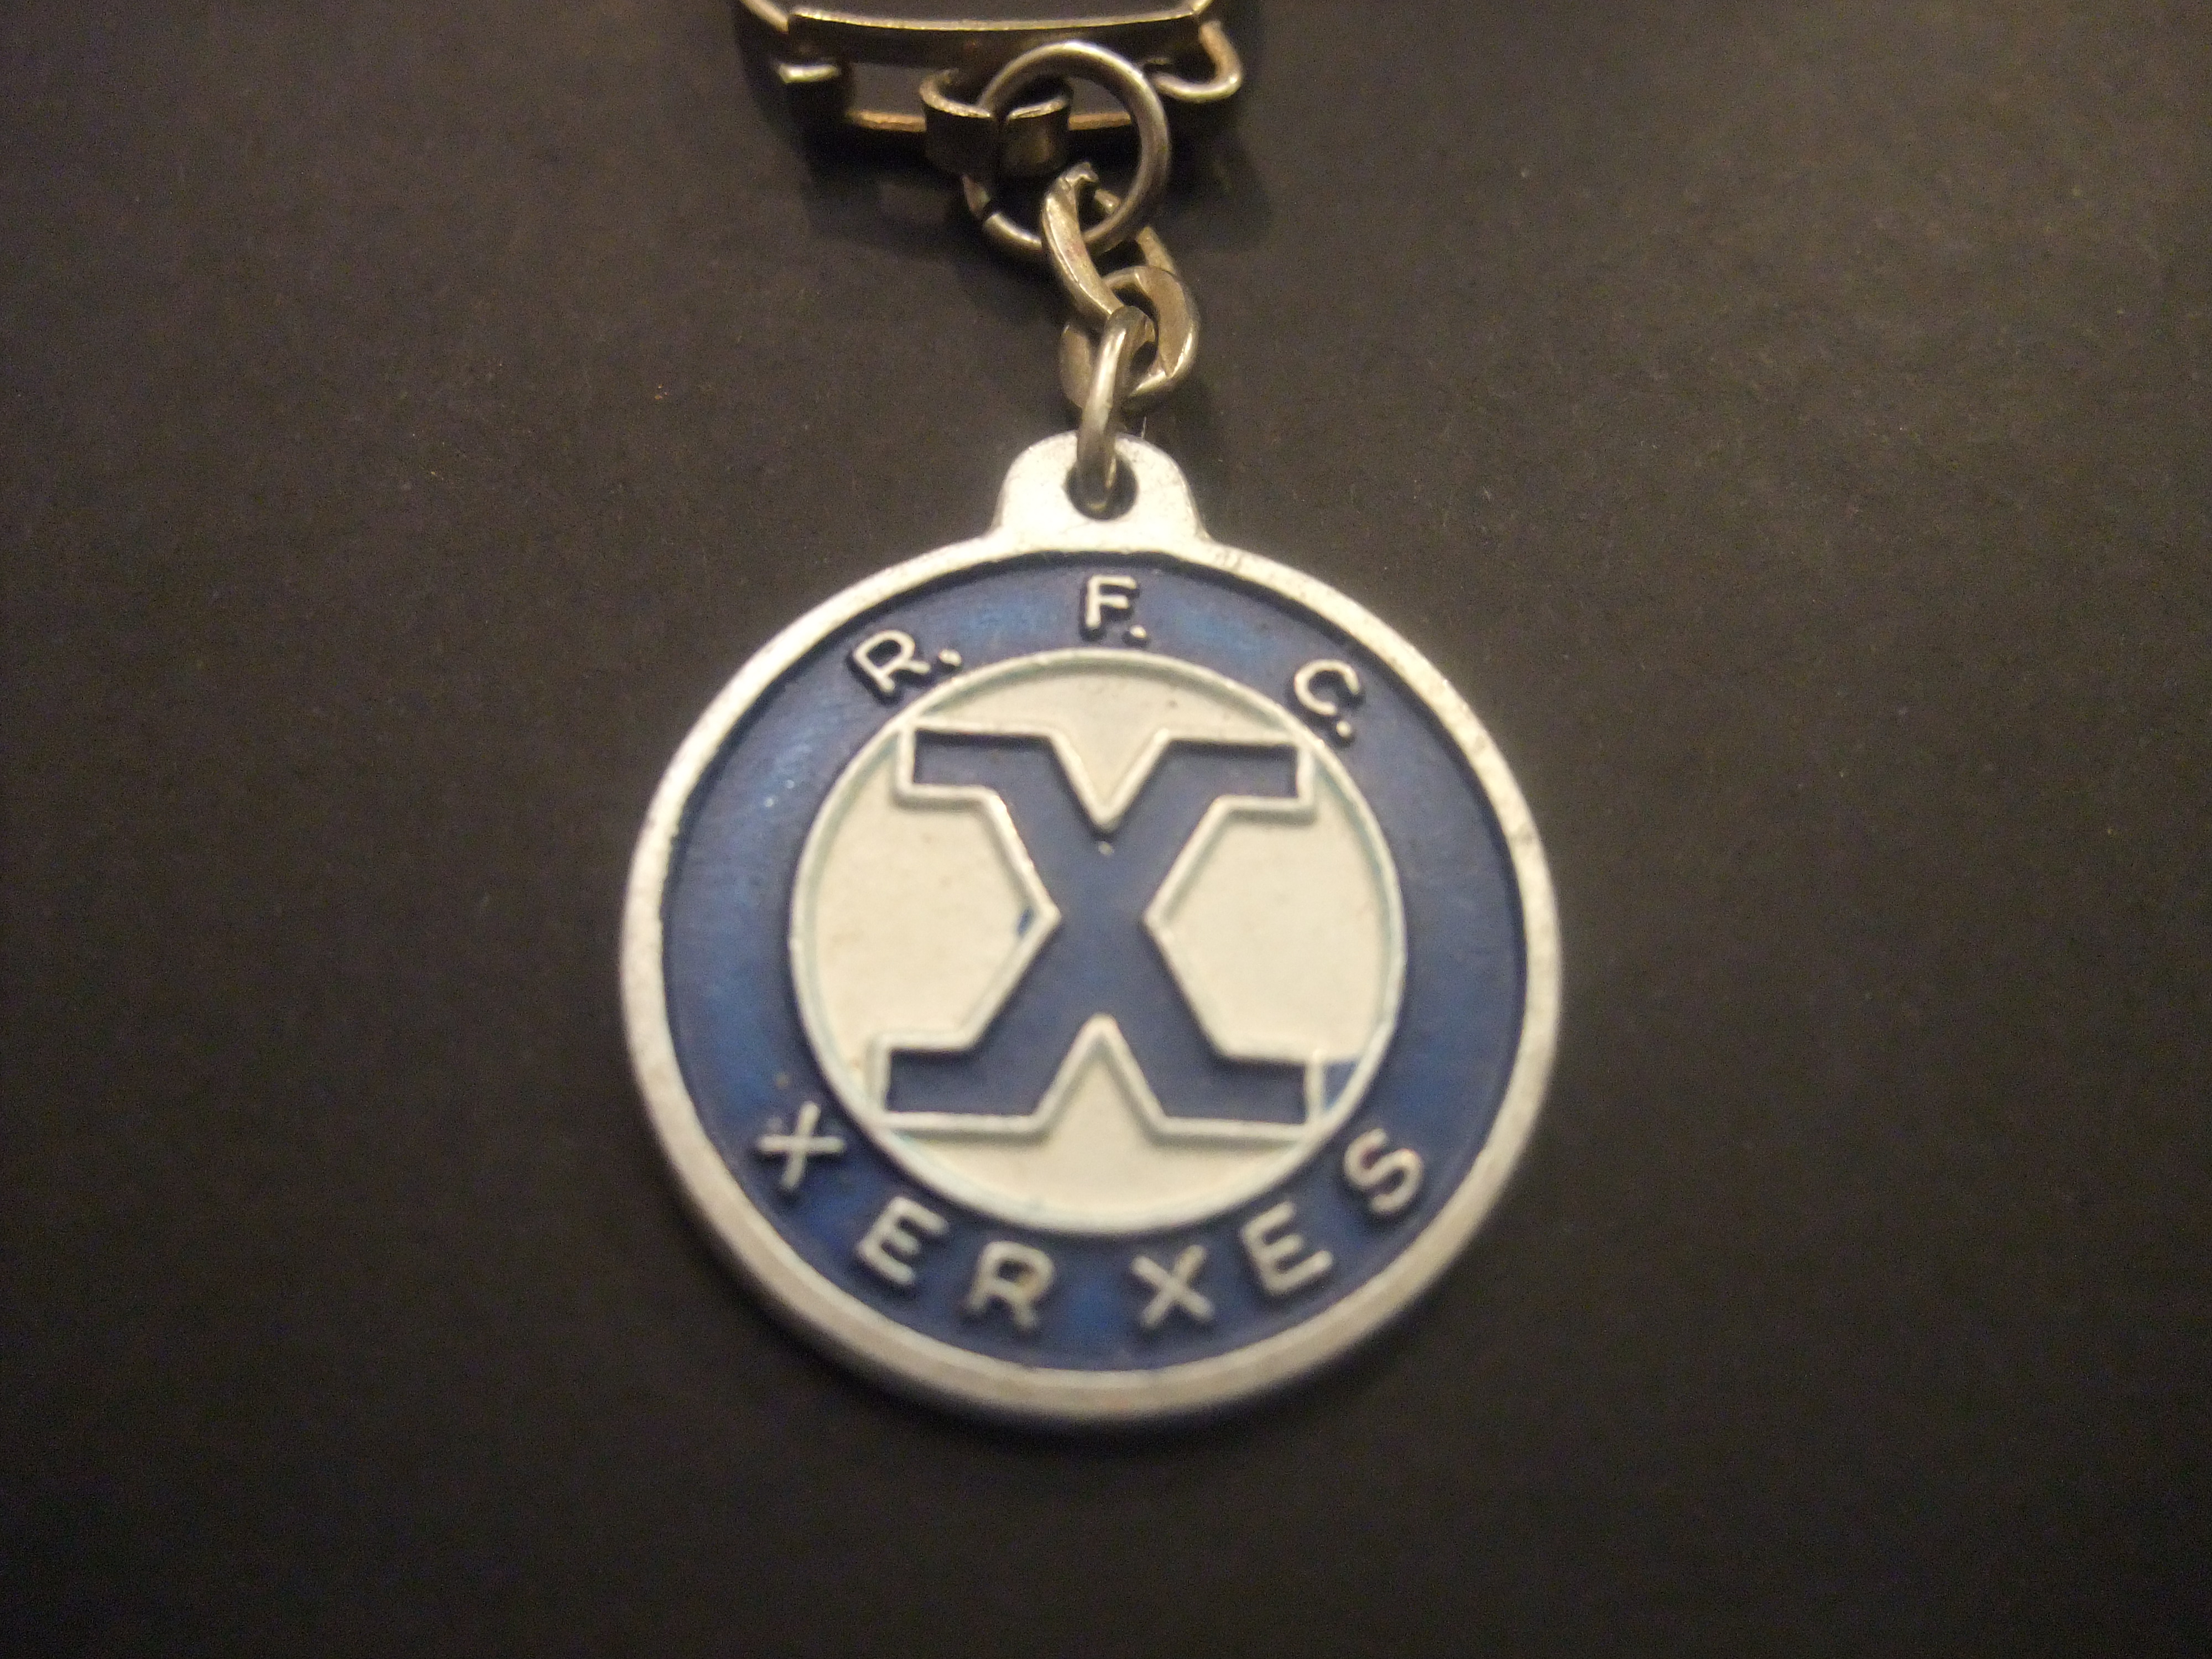 Xerxes Rotterdam amateurvereniging voetbal sleutelhanger